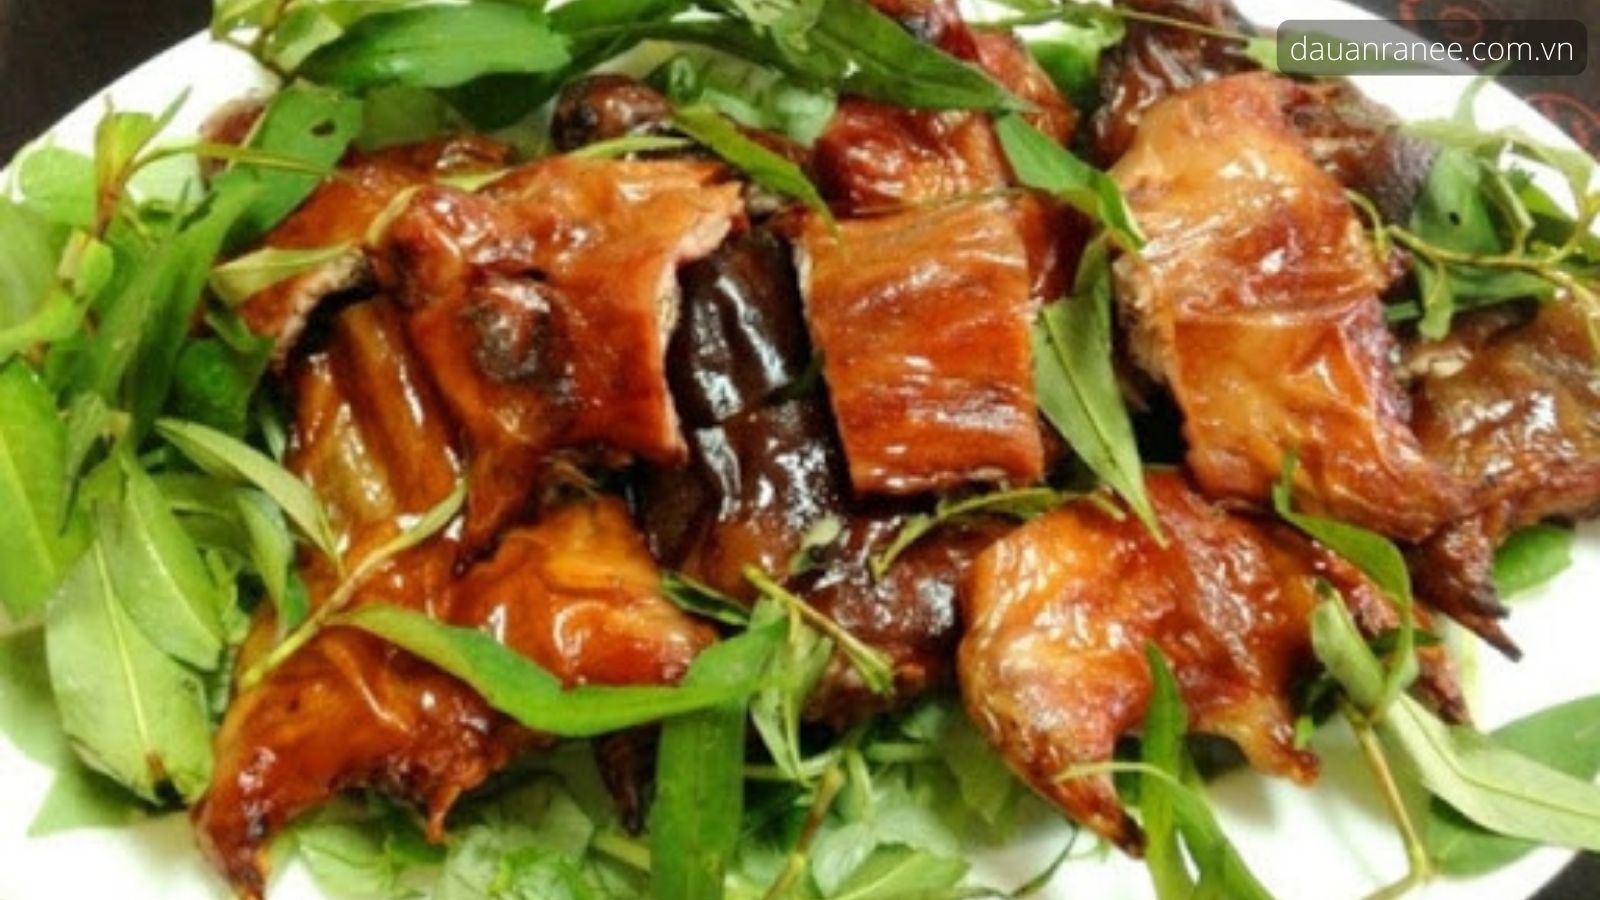 Đặc sản Bến Tre thịt chuột dừa ngon - Hương vị của món ăn ngon đặc sản miền Tây